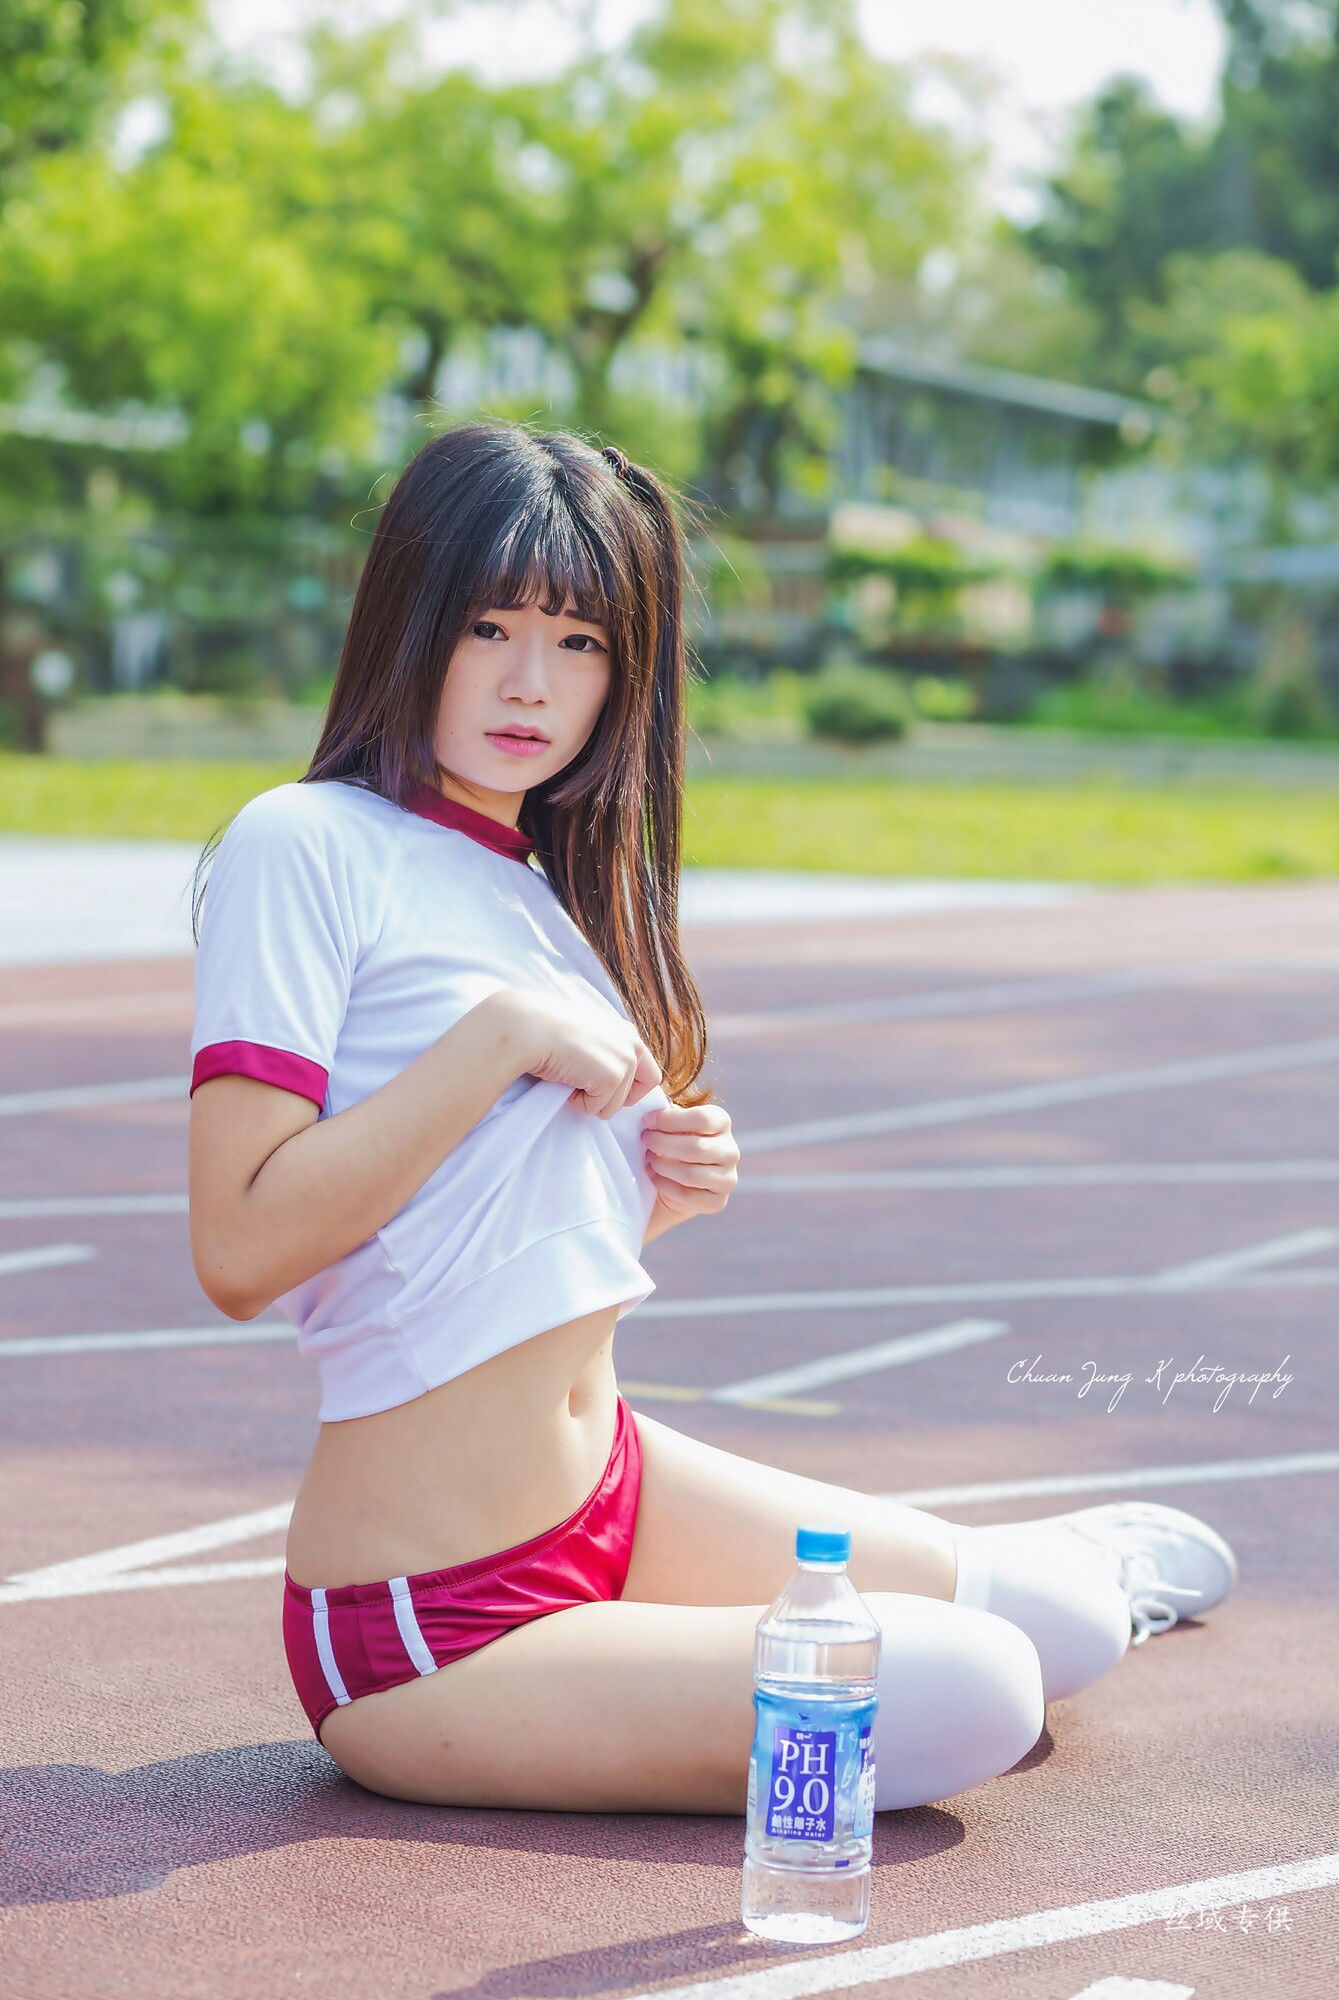 [Taiwan Zhengmei] Bibi “Sports Service” Photo Album